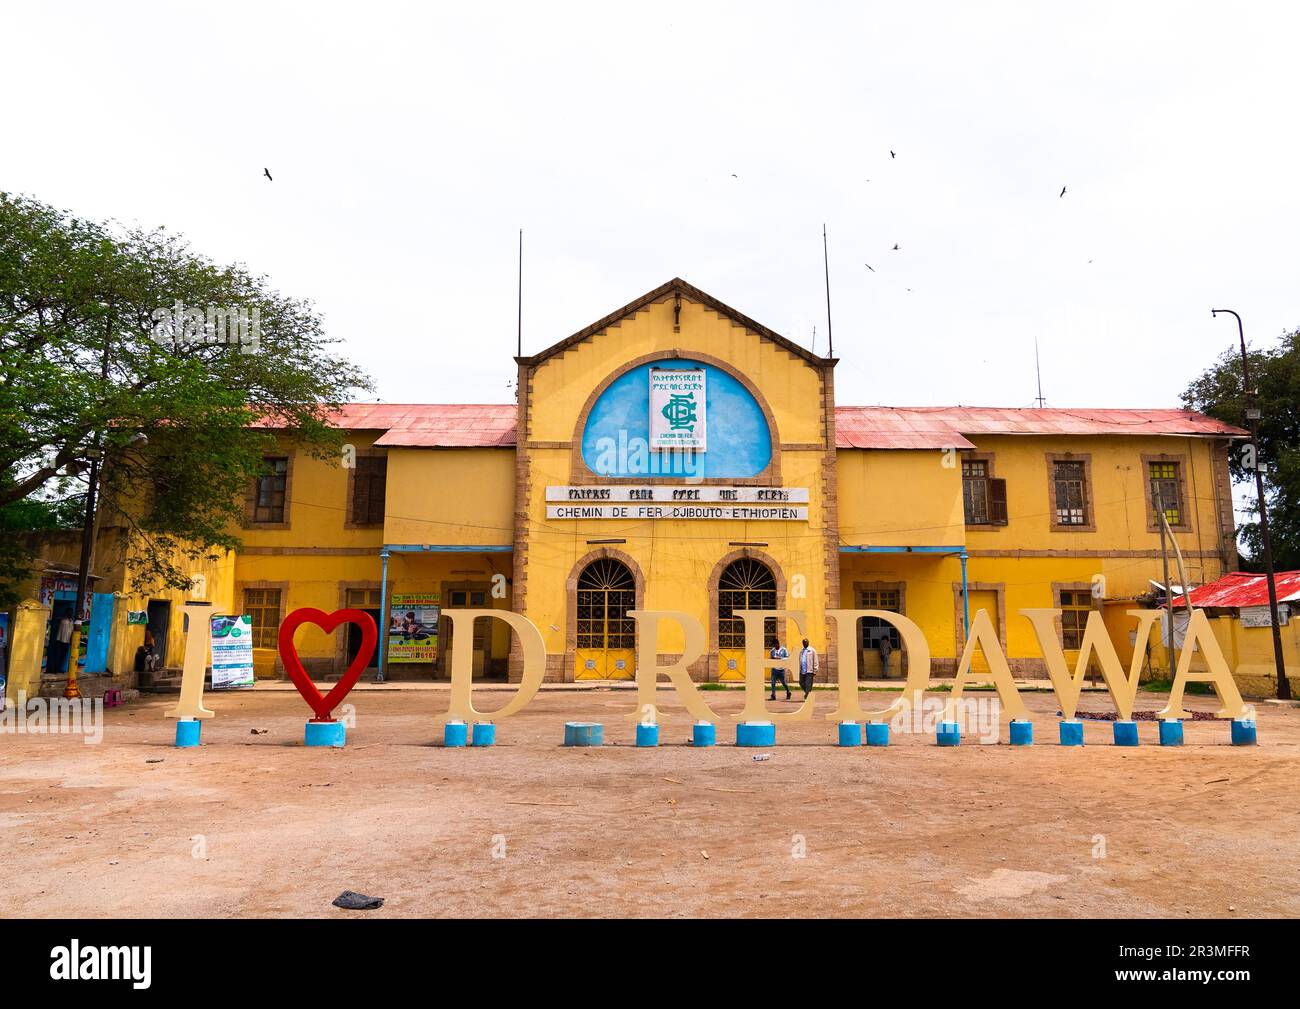 Gare de dire Dawa, région de dire Dawa, dire Dawa, Éthiopie Banque D'Images